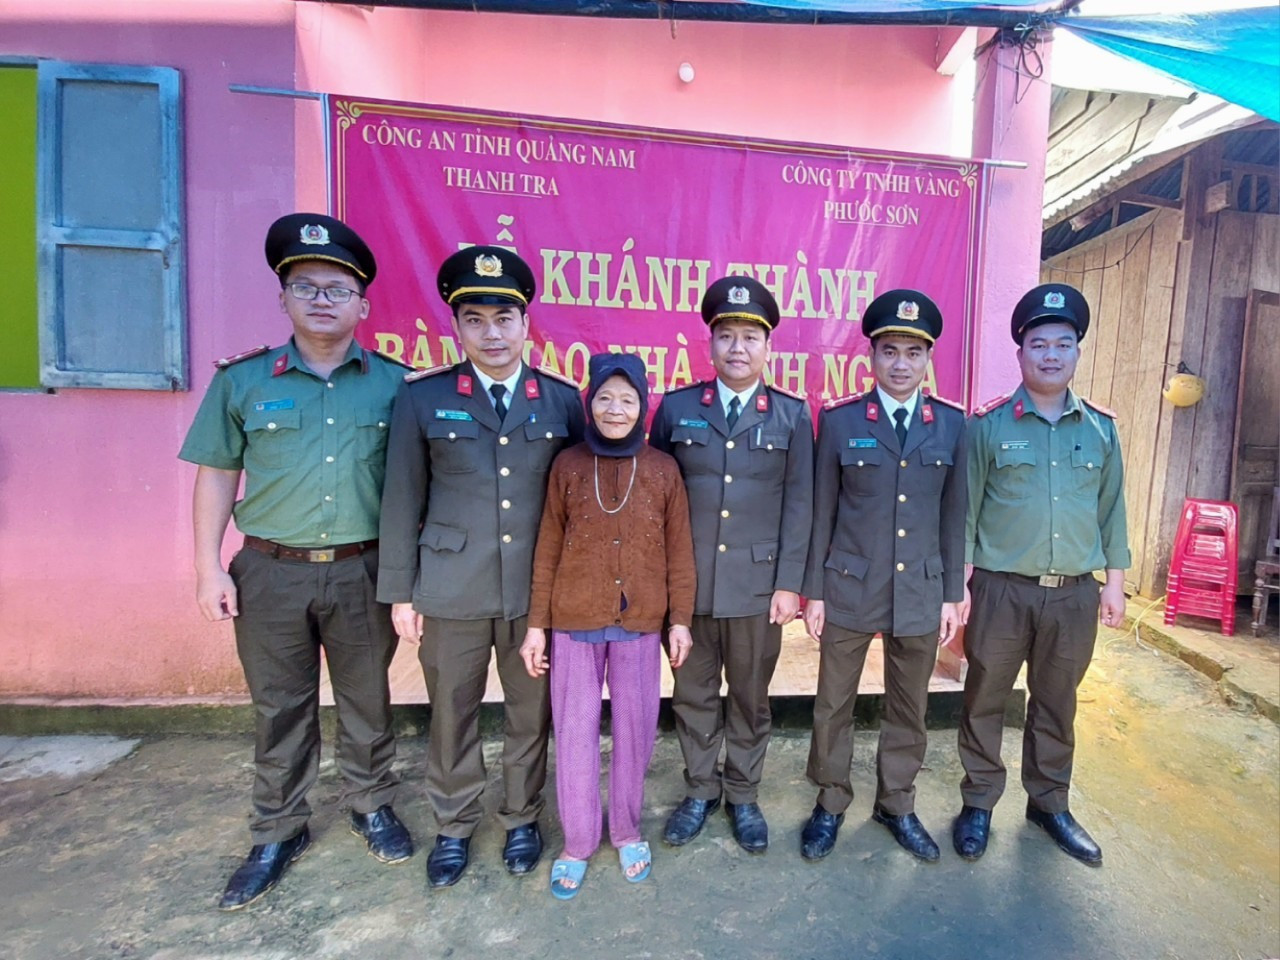 Cán bộ chiến sĩ Phòng Thanh tra Công an tỉnh cùng bà Hồ Thị Nghỉ bên căn nhà mới. Ảnh: L.S